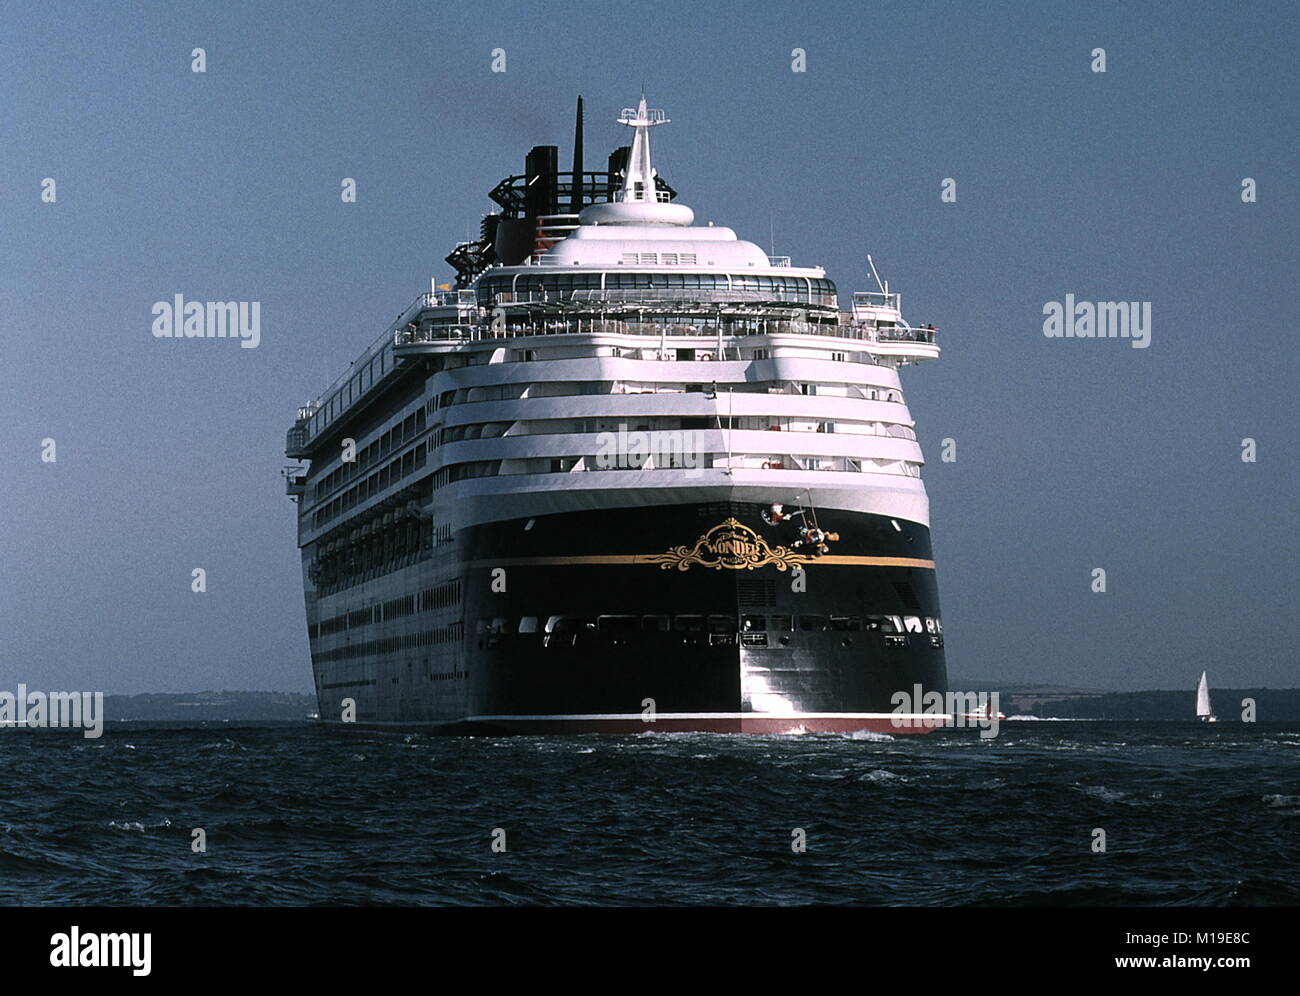 AJAXNETPHOTO. Juillet 23, 1999. SOUTHAMPTON, Angleterre. - Étonnant navire - le nouveau bateau de croisière Disney Wonder Outward Bound DE SOUTHAMPTON. PHOTO:JONATHAN EASTLAND/AJAX. REF:990109 9 Banque D'Images